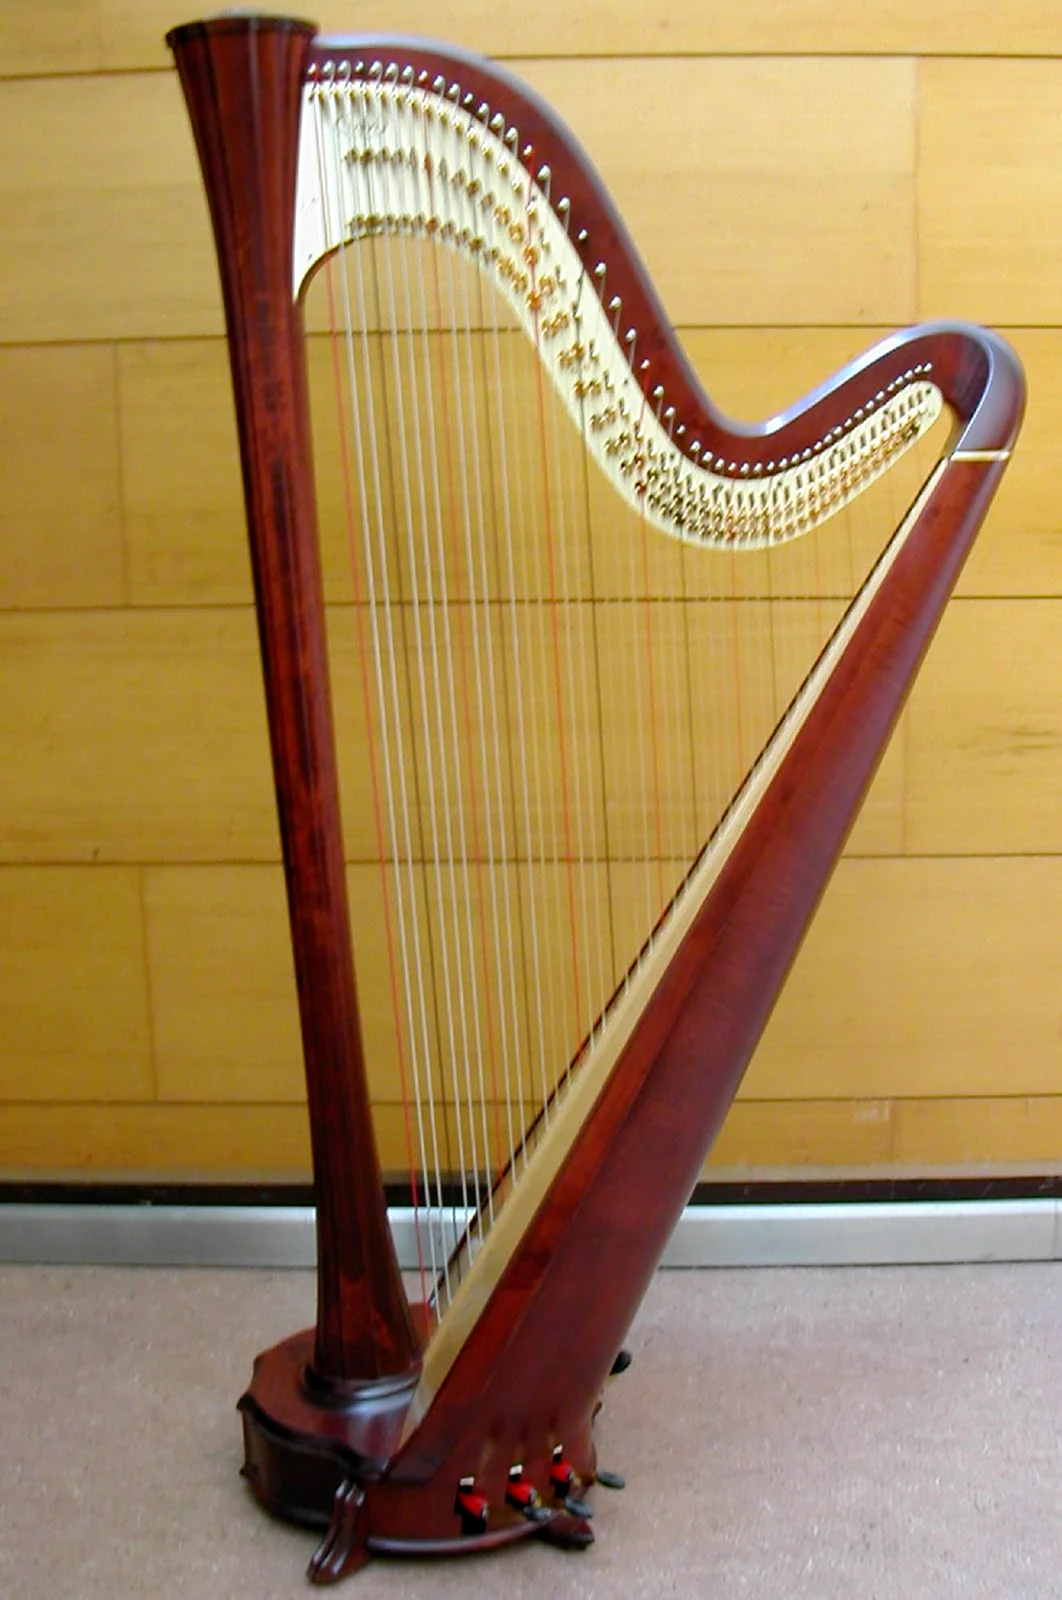 Arpa инструмент музыкальный